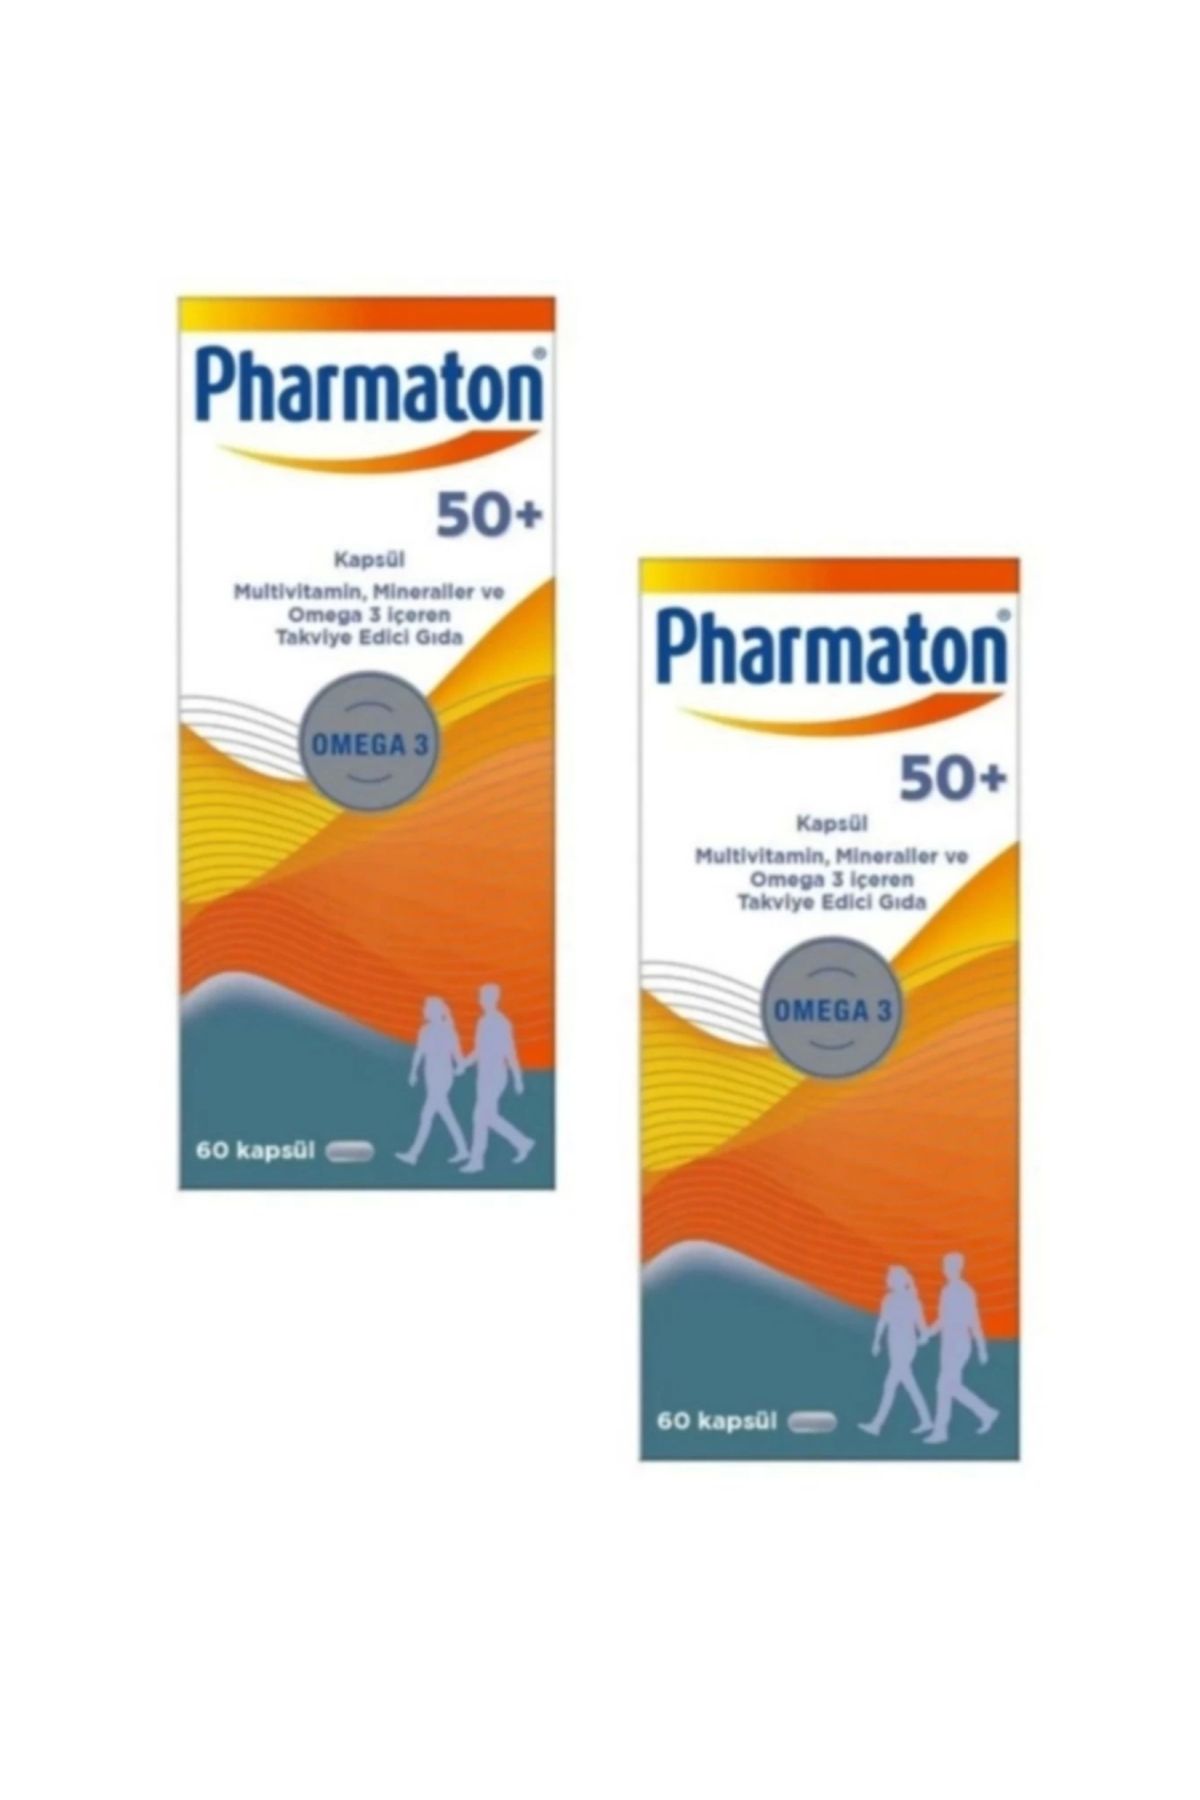 Pharmaton 50 Plus 60 Kapsül Omega 3 ve Multivitamin Mineraller 2'li Avantaj Paketi